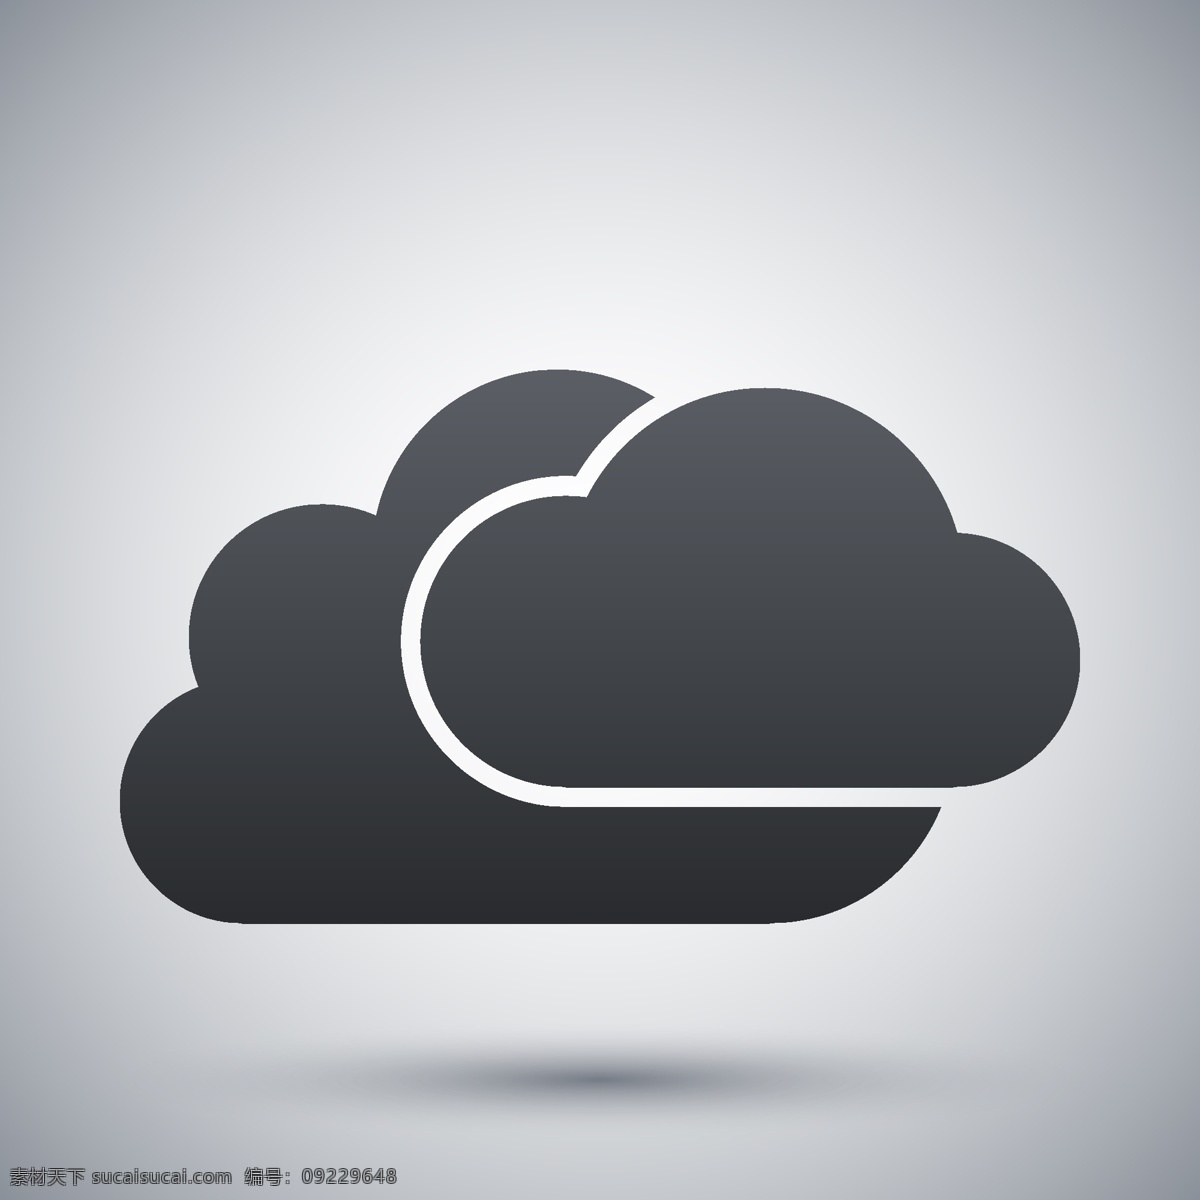 云计算图标 云系统图标 云服务 网络信息科技 云朵图标 生活百科 矢量素材 灰色